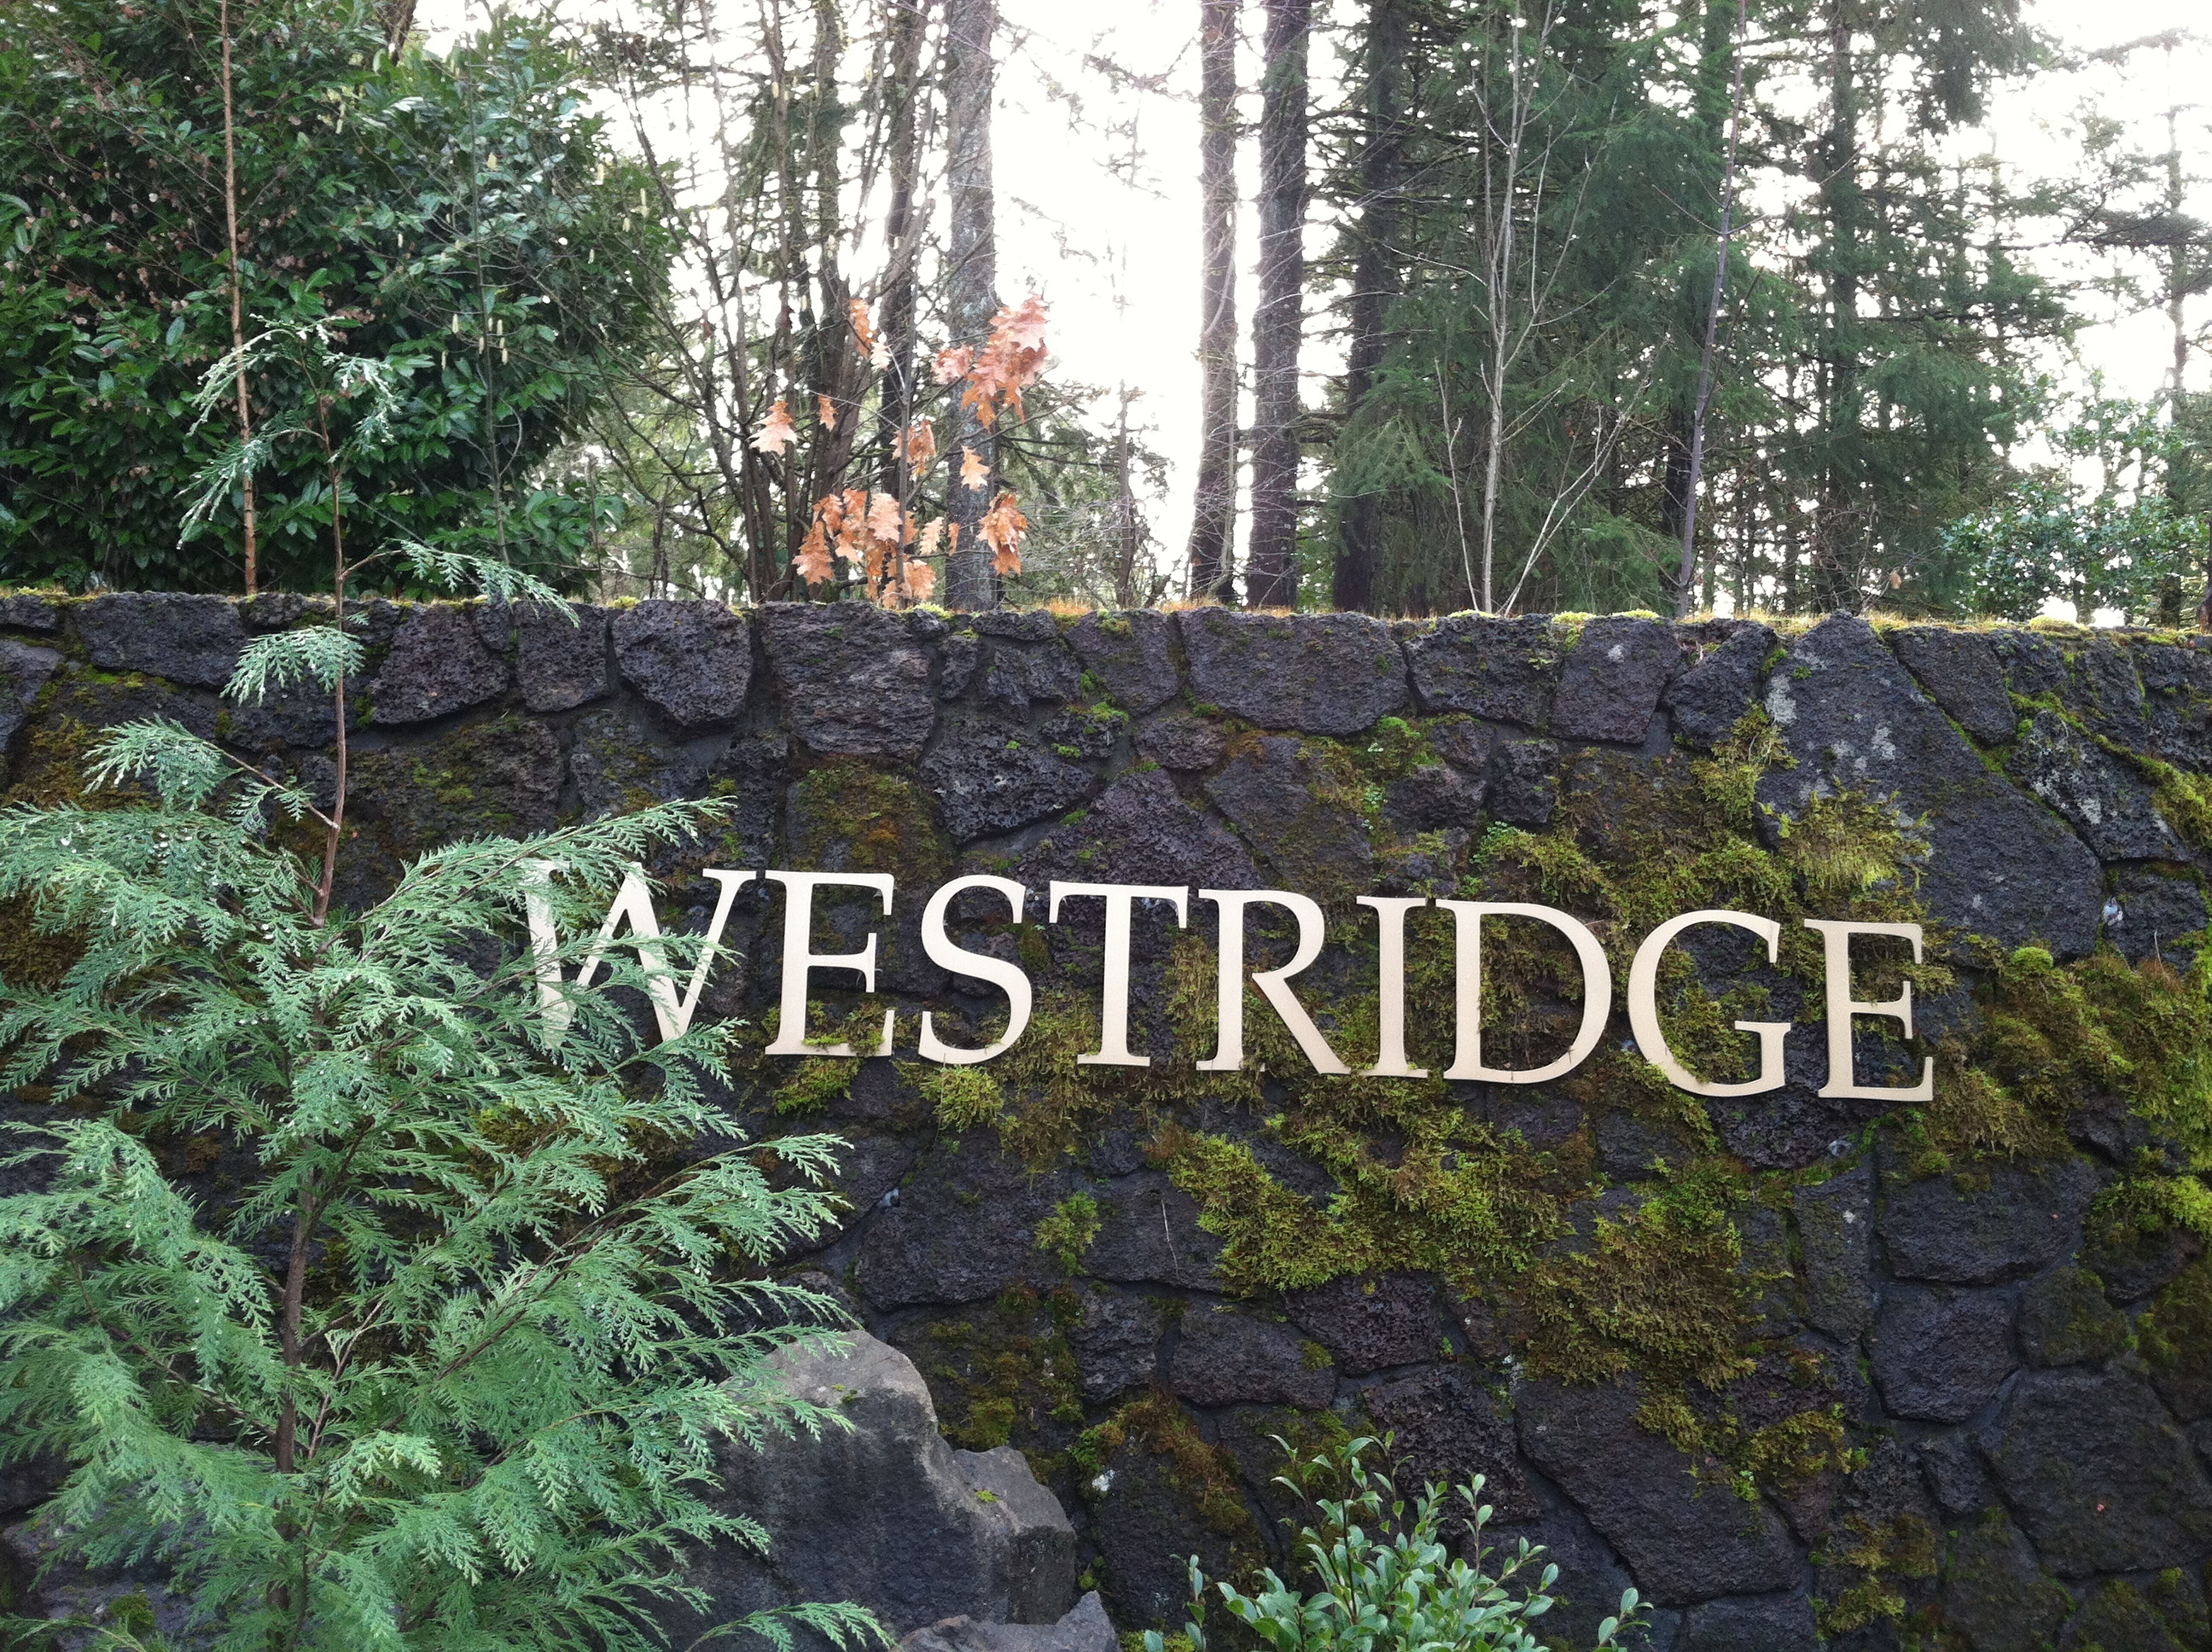 westridge